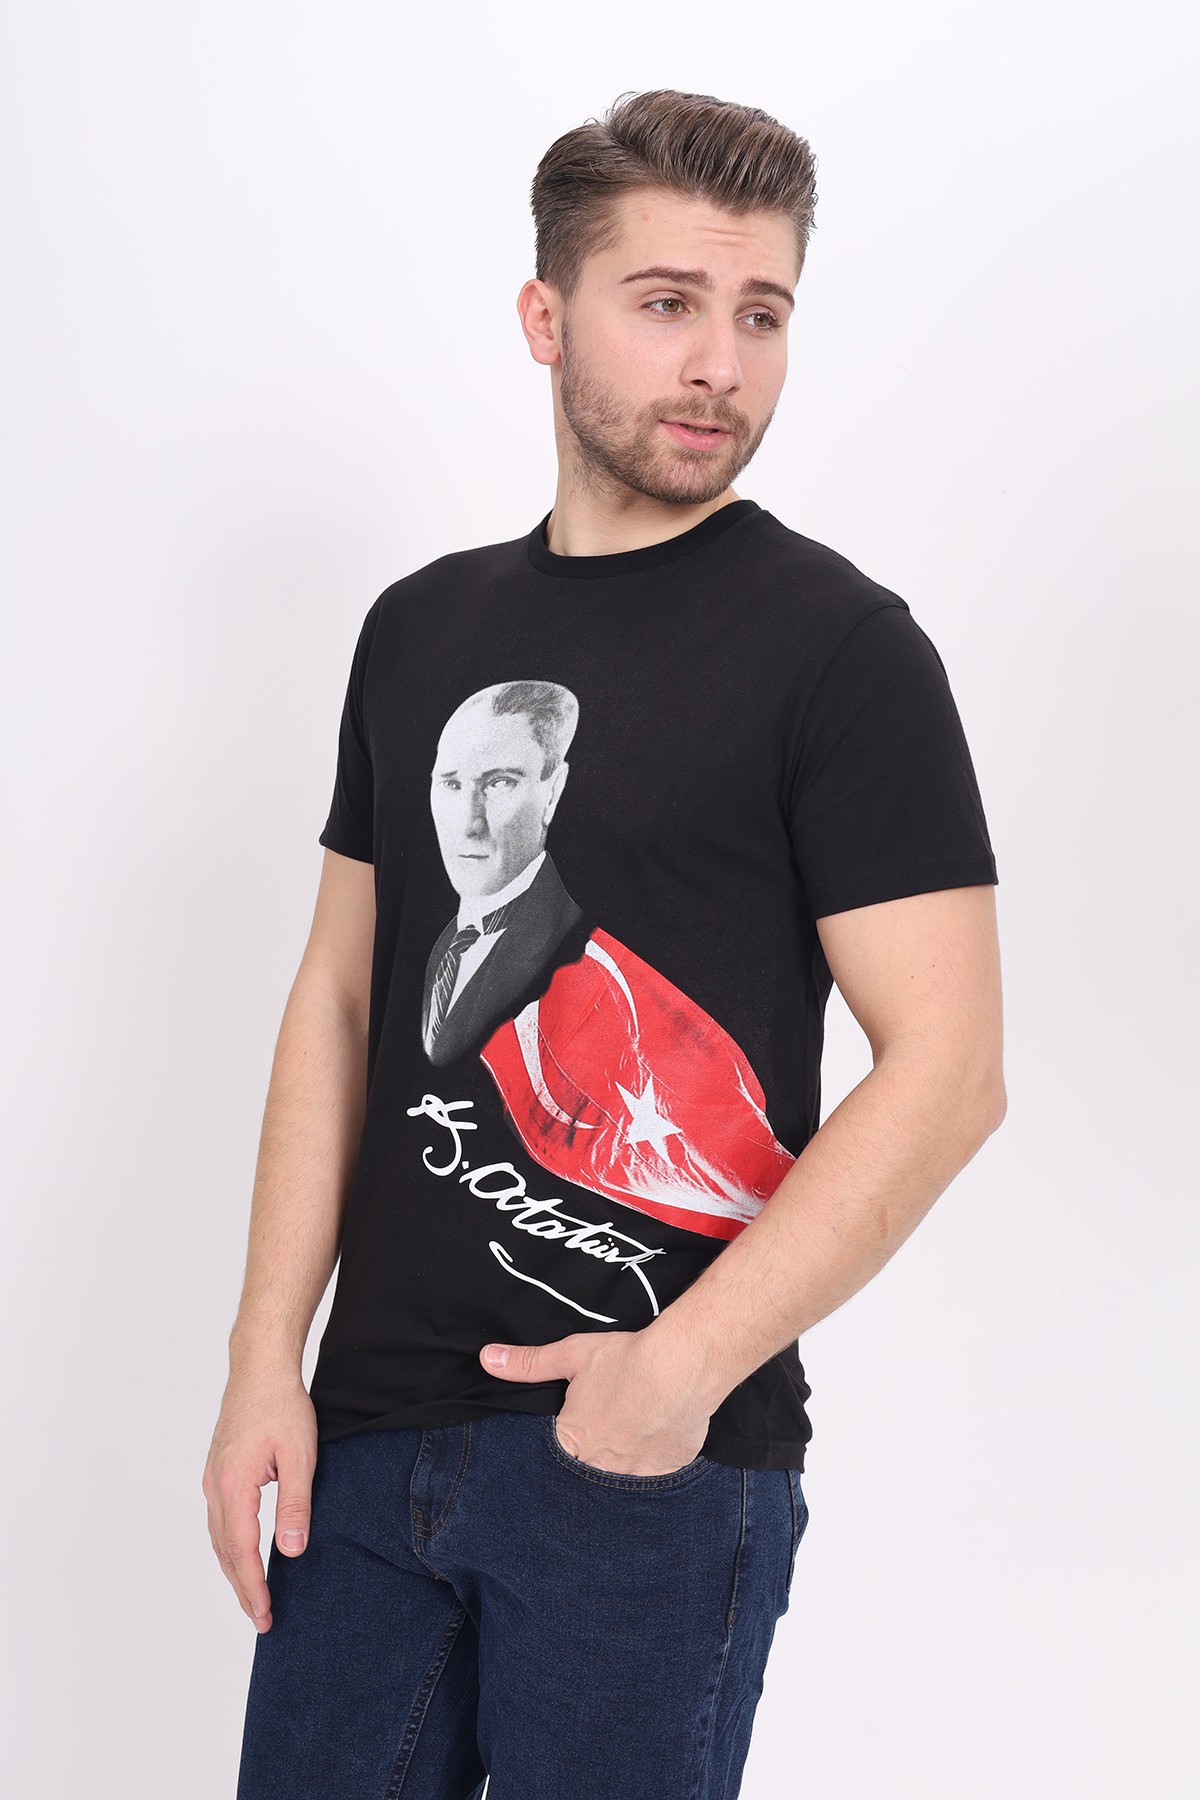 Toontoy Unisex Atatürk Baskılı Tişört